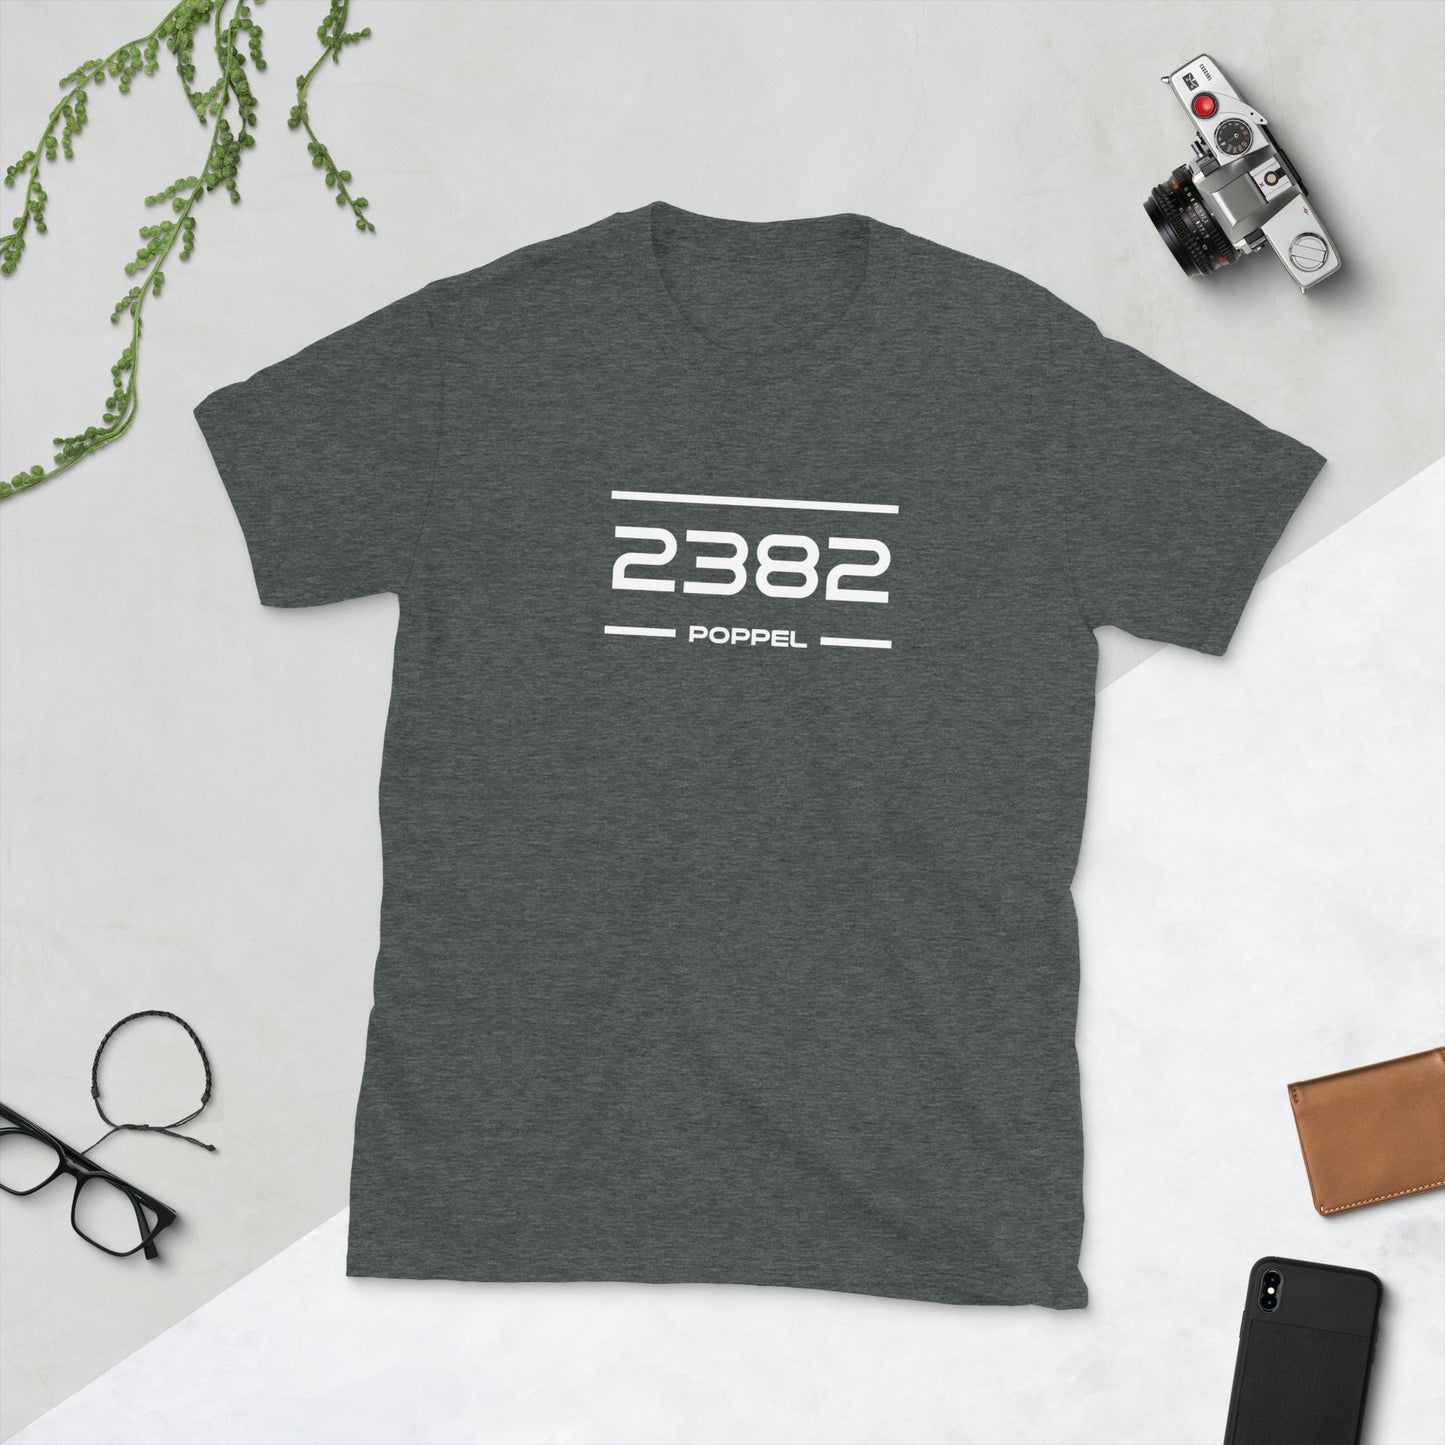 Tshirt - 2382 - Poppel